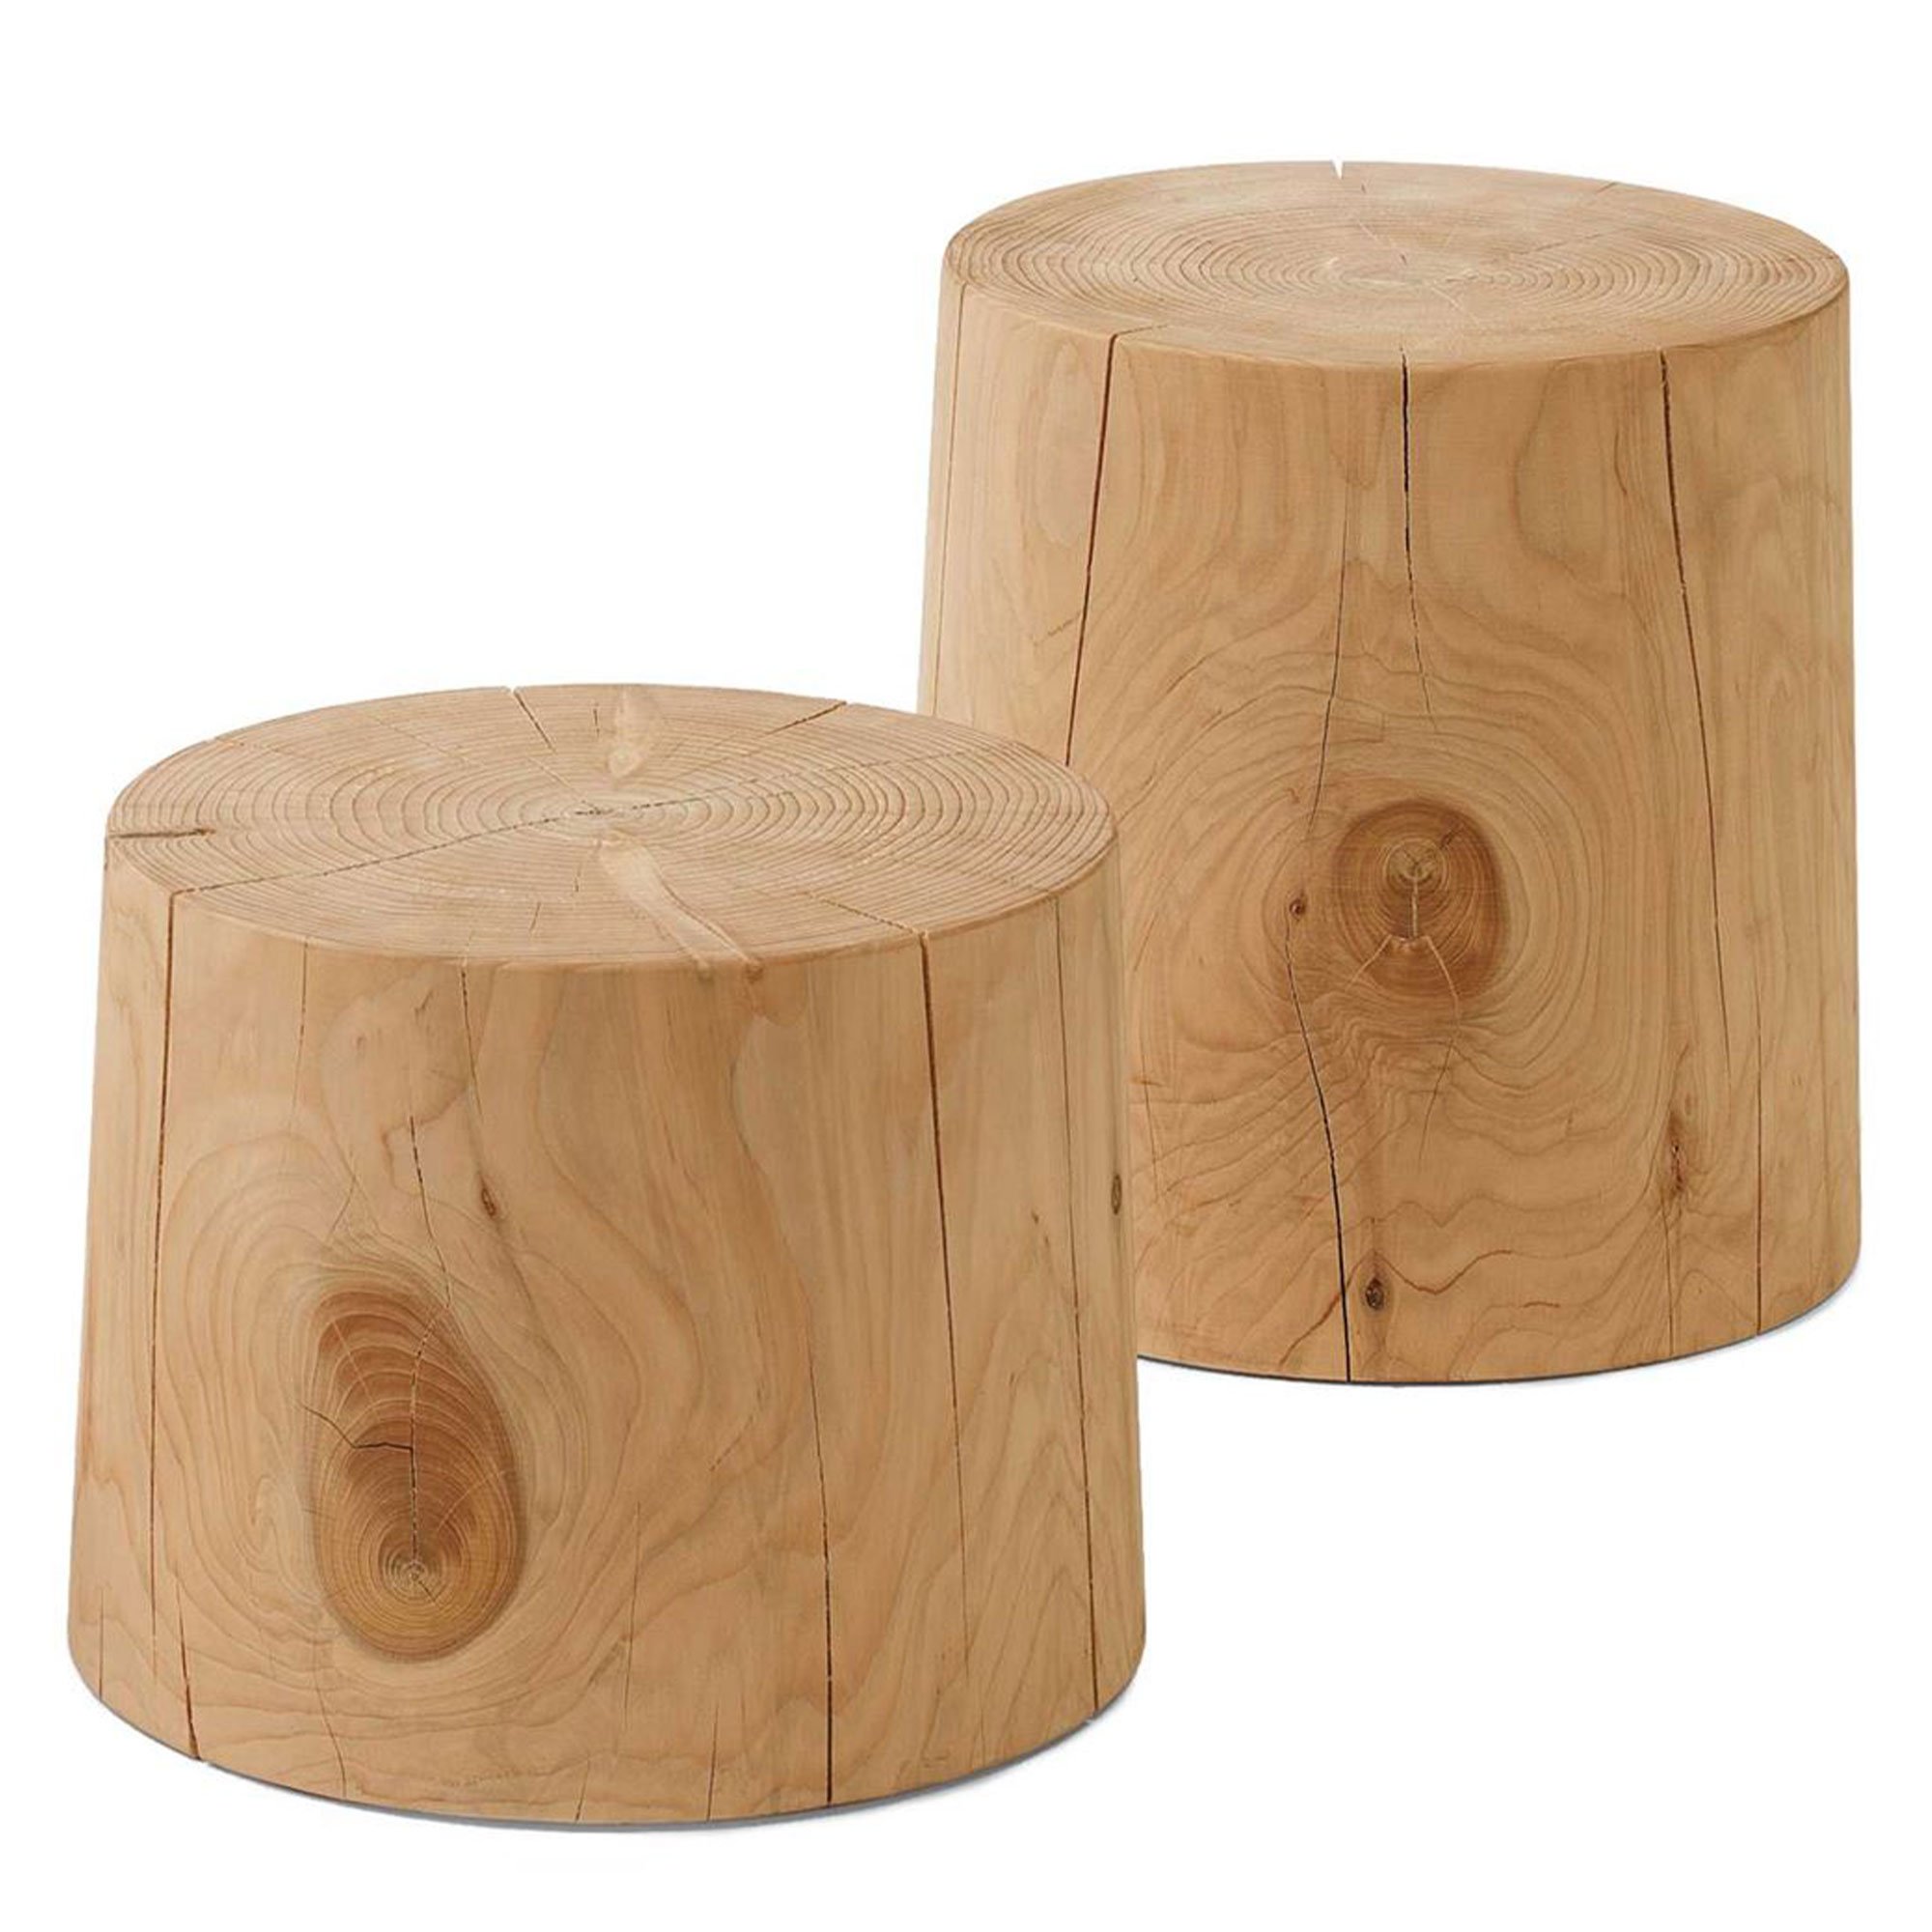 RIVA Legno Vivo Small Table 30x40cm, Round, Cedar Wood | Barker & Stonehouse